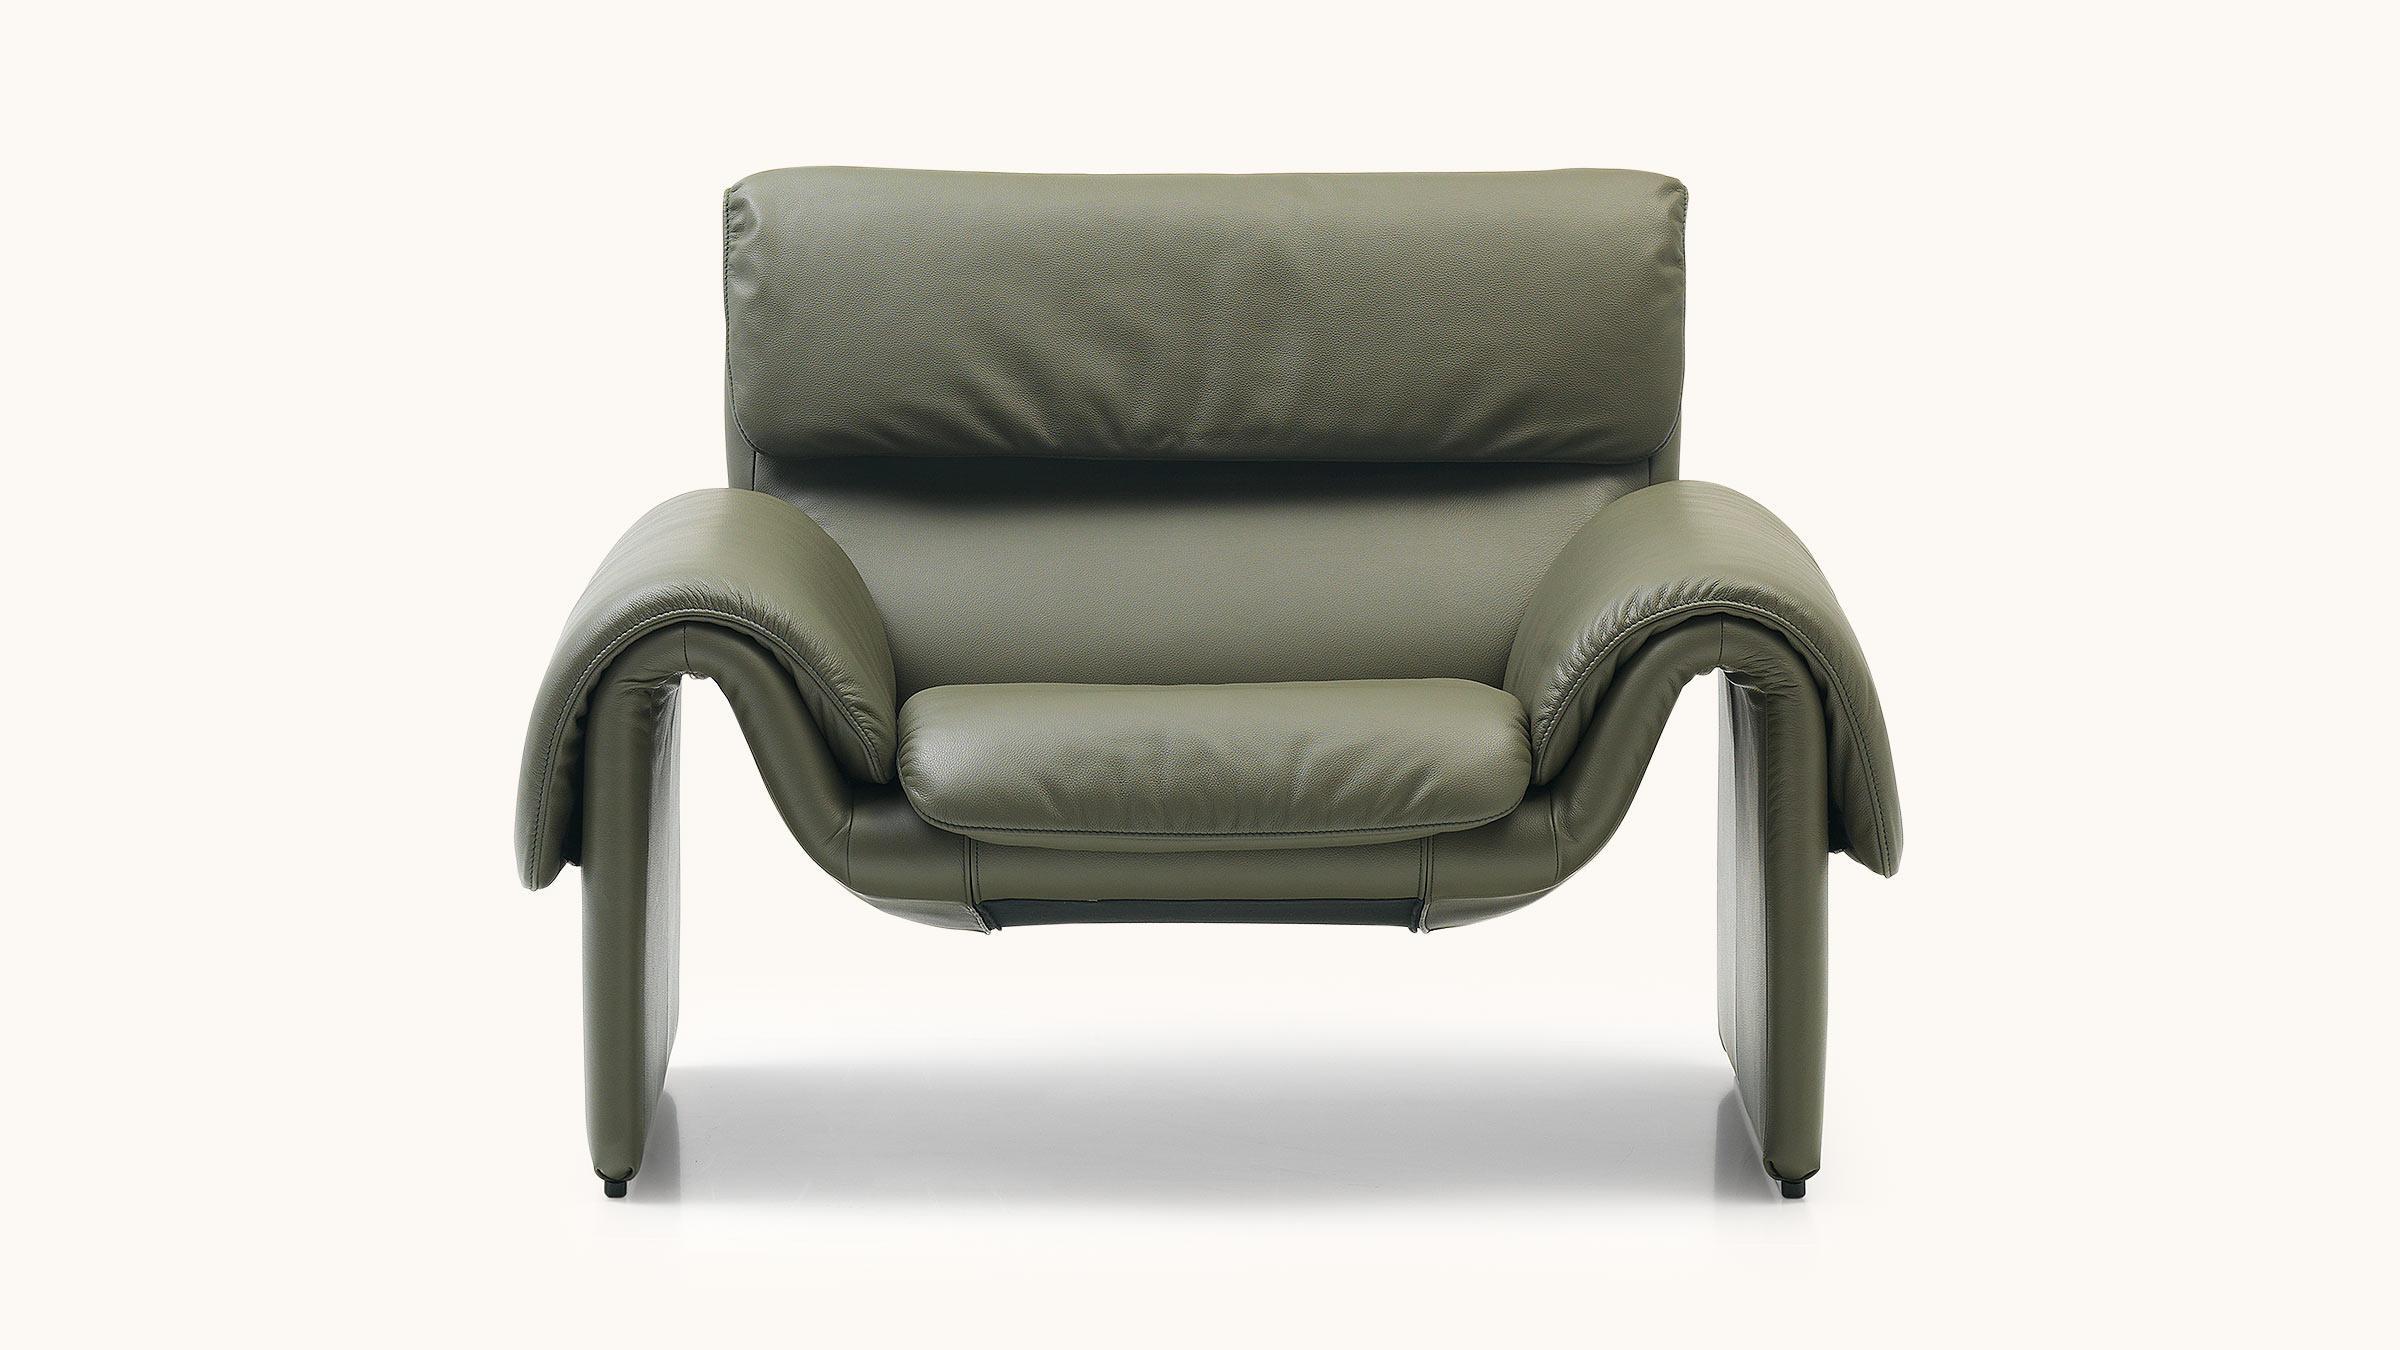 Mit ihren fließenden, geschwungenen Formen wirkt die DS-2011 kraftvoll und dynamisch, wo andere Möbel bereits im Schlafmodus sind. Die optische Leichtigkeit und die moderne, lässige Eleganz unterstreichen den zeitlosen Look, der das DS-2011 zu einem